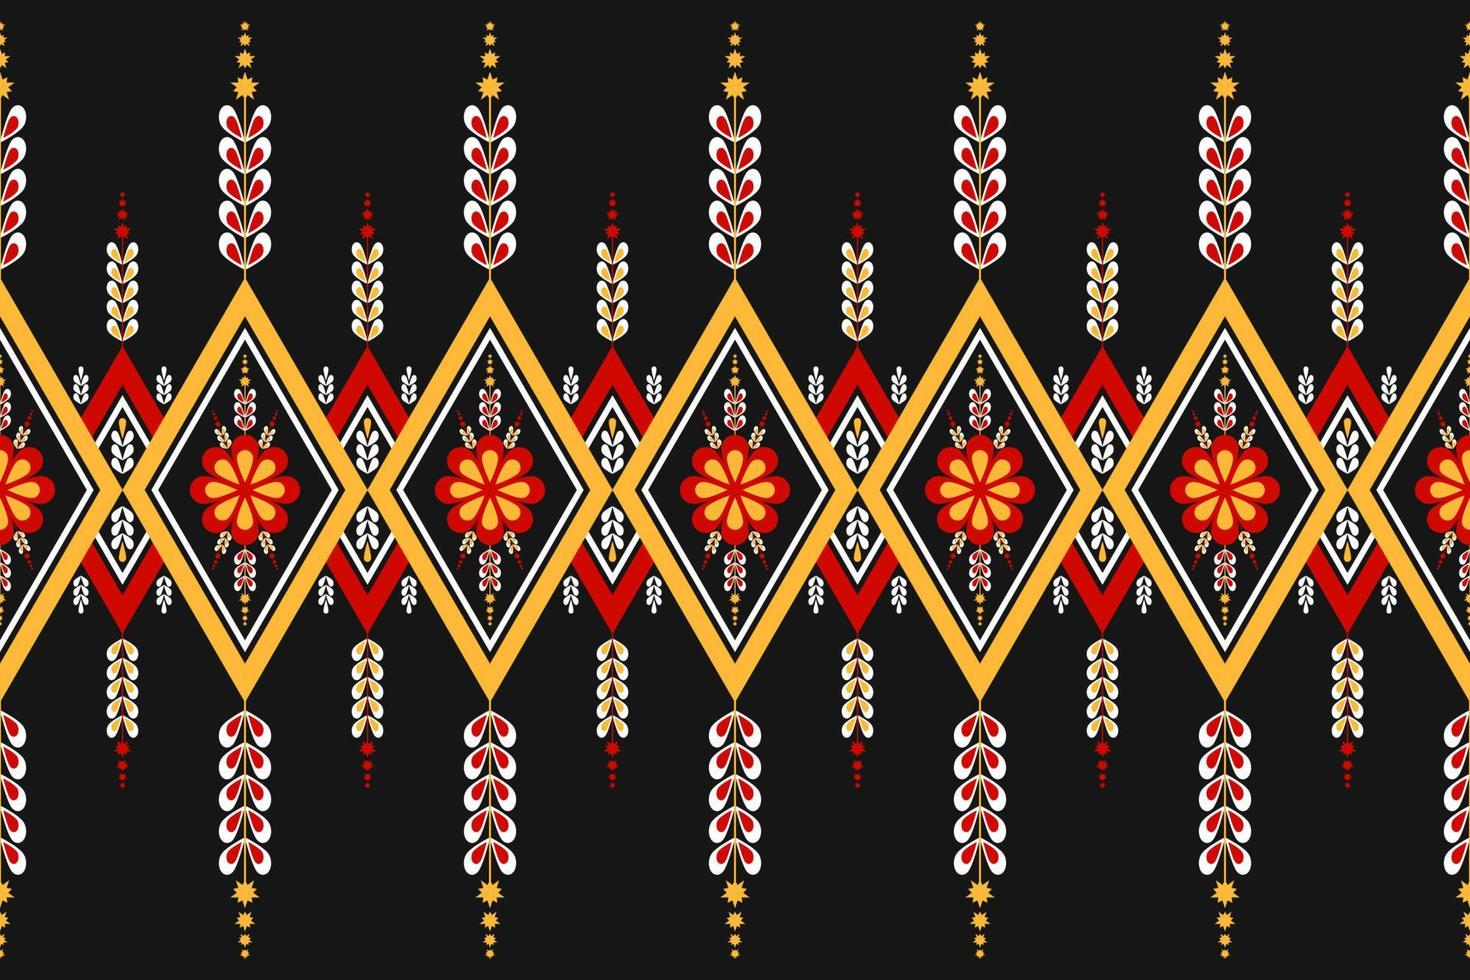 padrão sem emenda oriental geométrico étnico tradicional. decoração de flores coloridas. design para plano de fundo, papel de parede, ilustração vetorial, têxtil, tecido, vestuário, batik, tapete, bordado. vetor